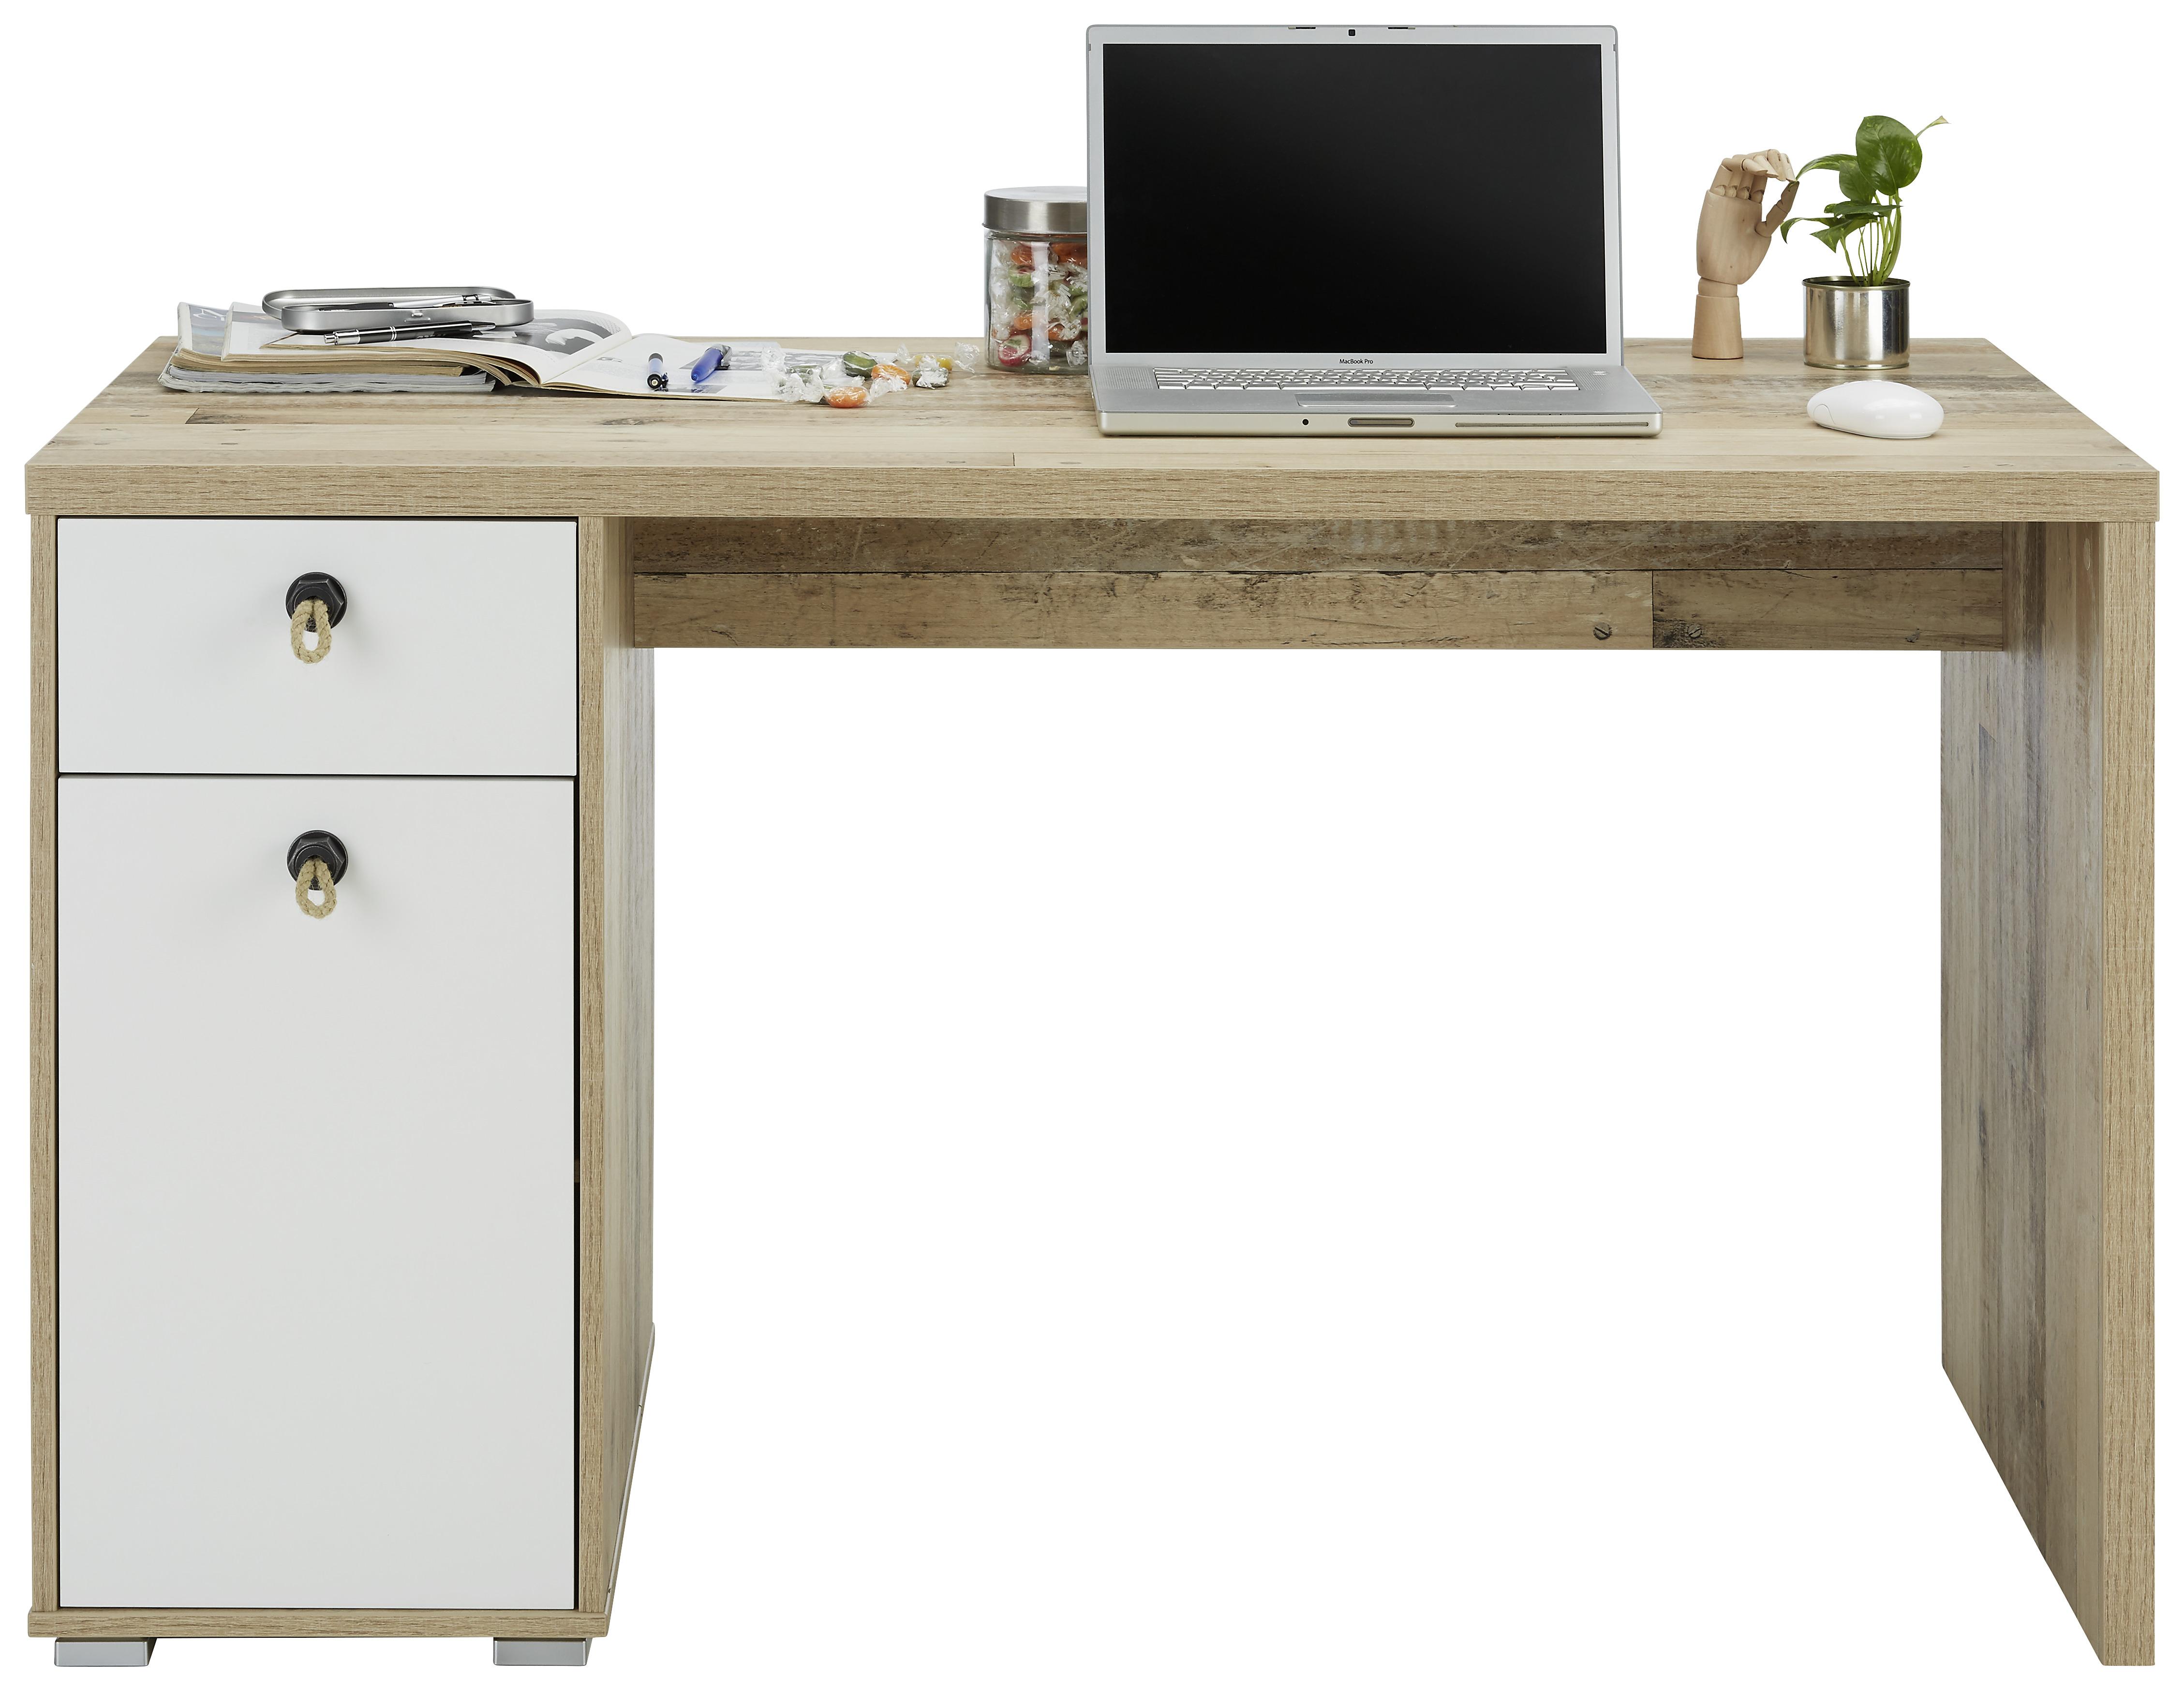 Schreibtisch in Eichefarben Old Style - Eichefarben/Anthrazit, KONVENTIONELL, Naturmaterialien/Holzwerkstoff (130/76/70cm) - Modern Living